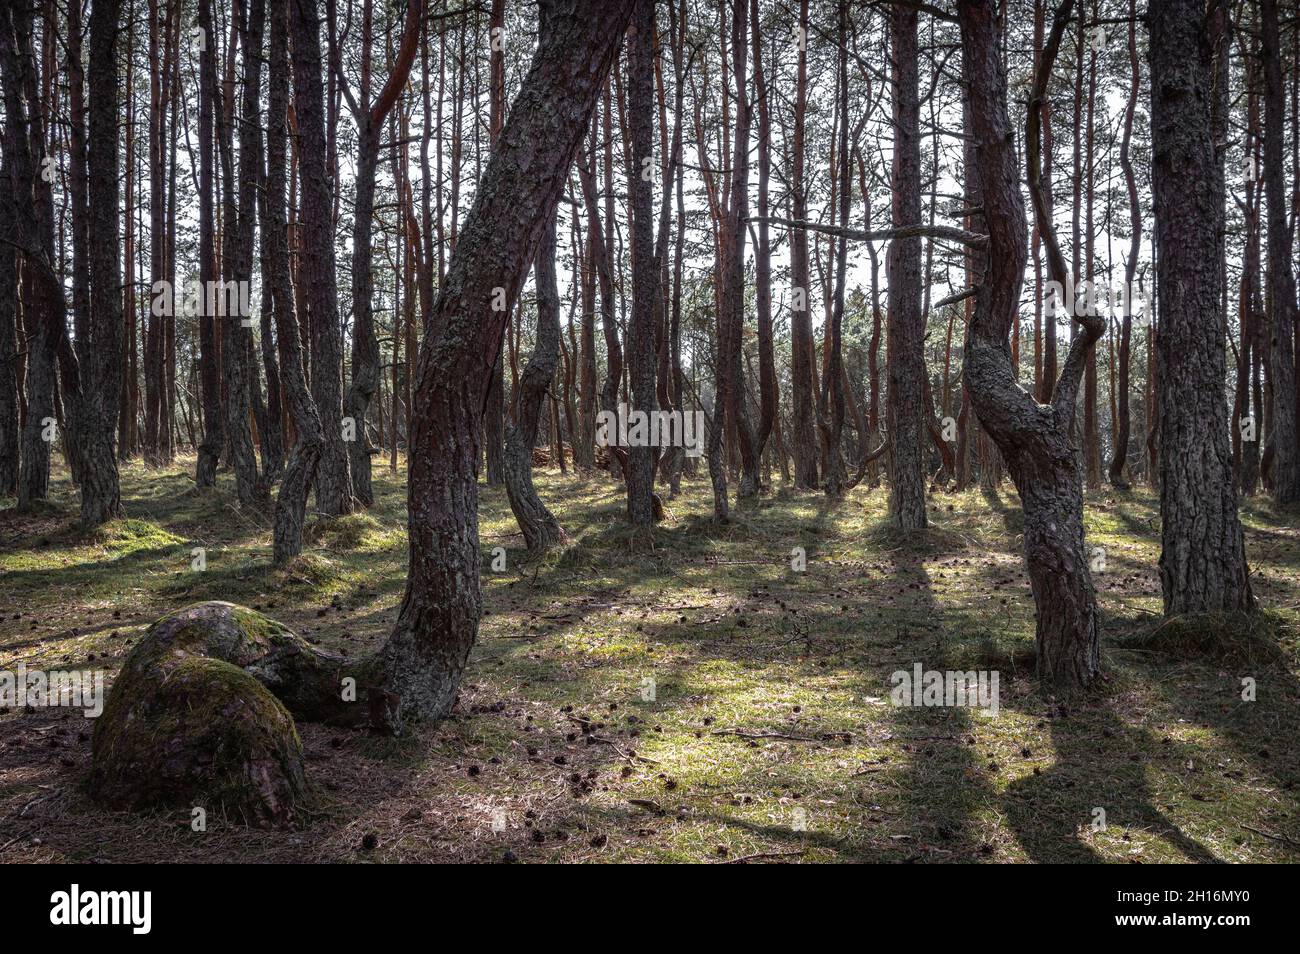 Foresta danzante di alberi insolitamente contorti nel Parco Nazionale delle Spit Curoniane, Kaliningrad. Foto Stock